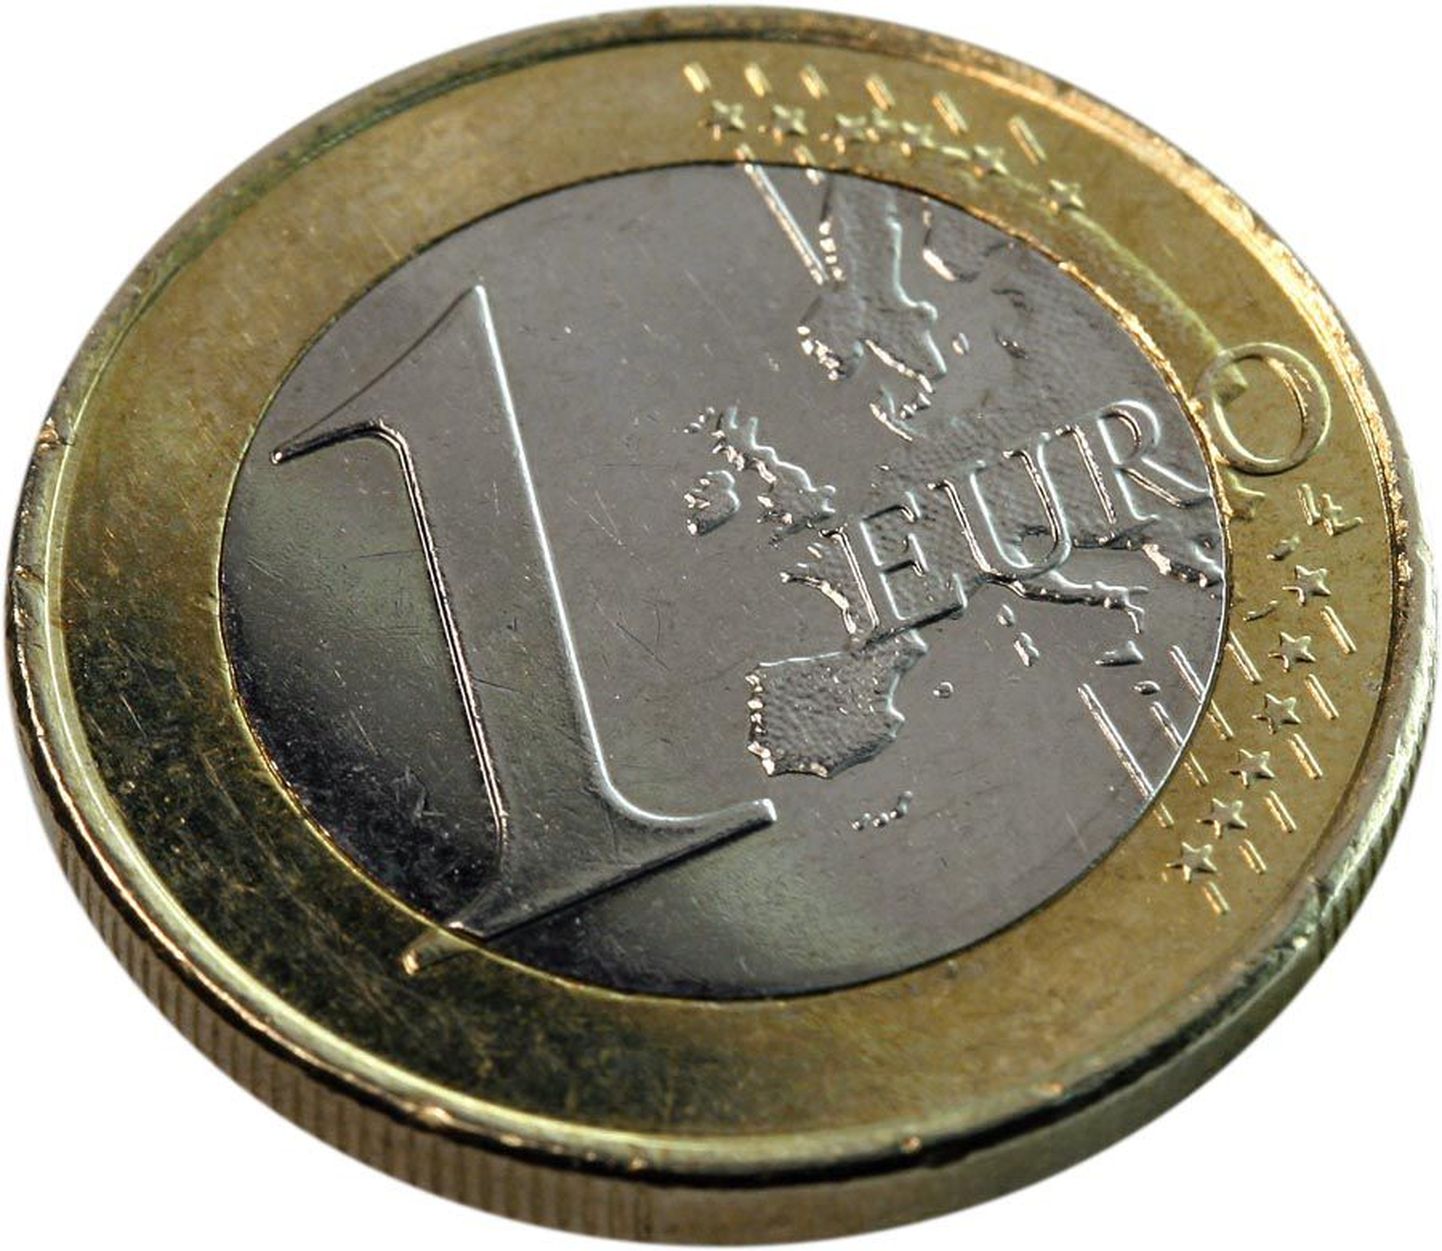 Eurose mündi nägemise järel hakkas enda tummaks väitnud mees rääkima ja lubas suurema rahatähe lahkelt lahti vahetada.